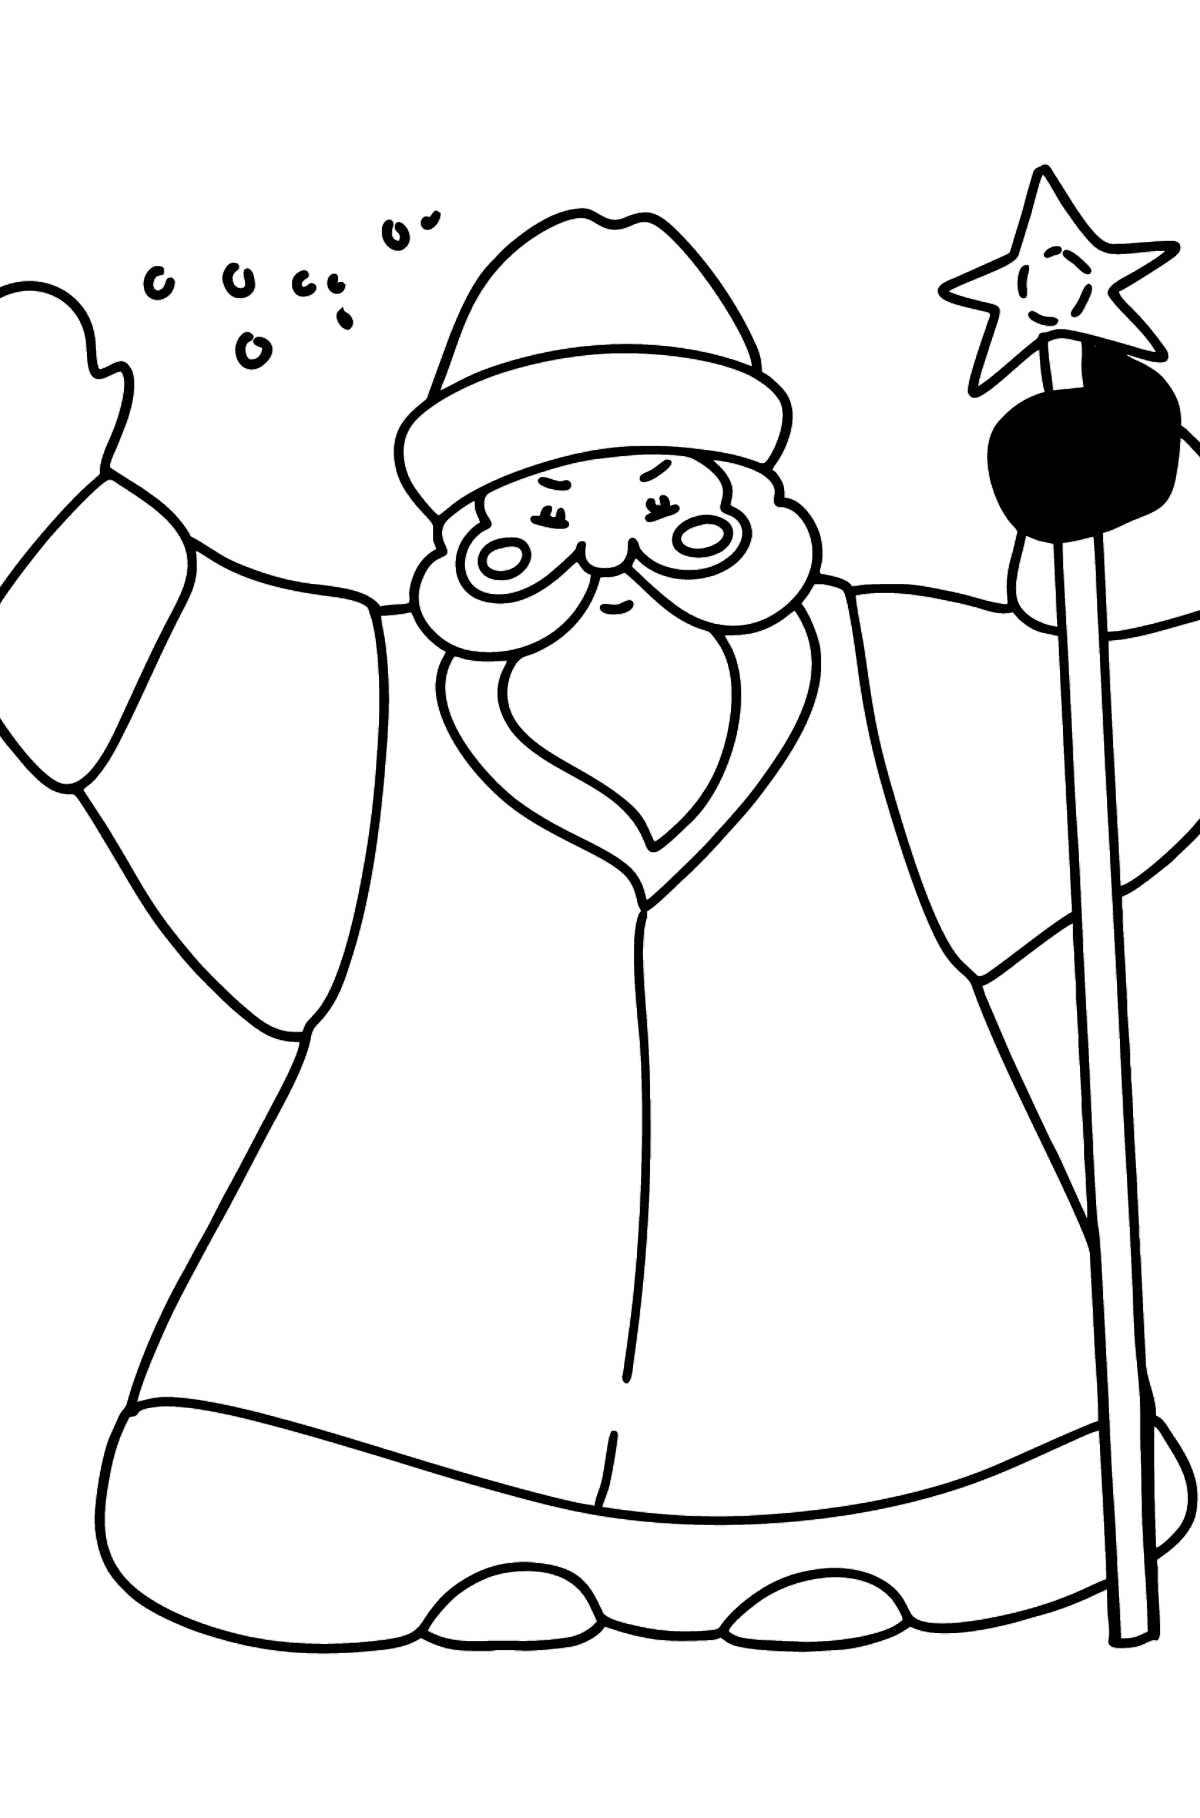 Раскраска дед мороз - Картинки для Детей